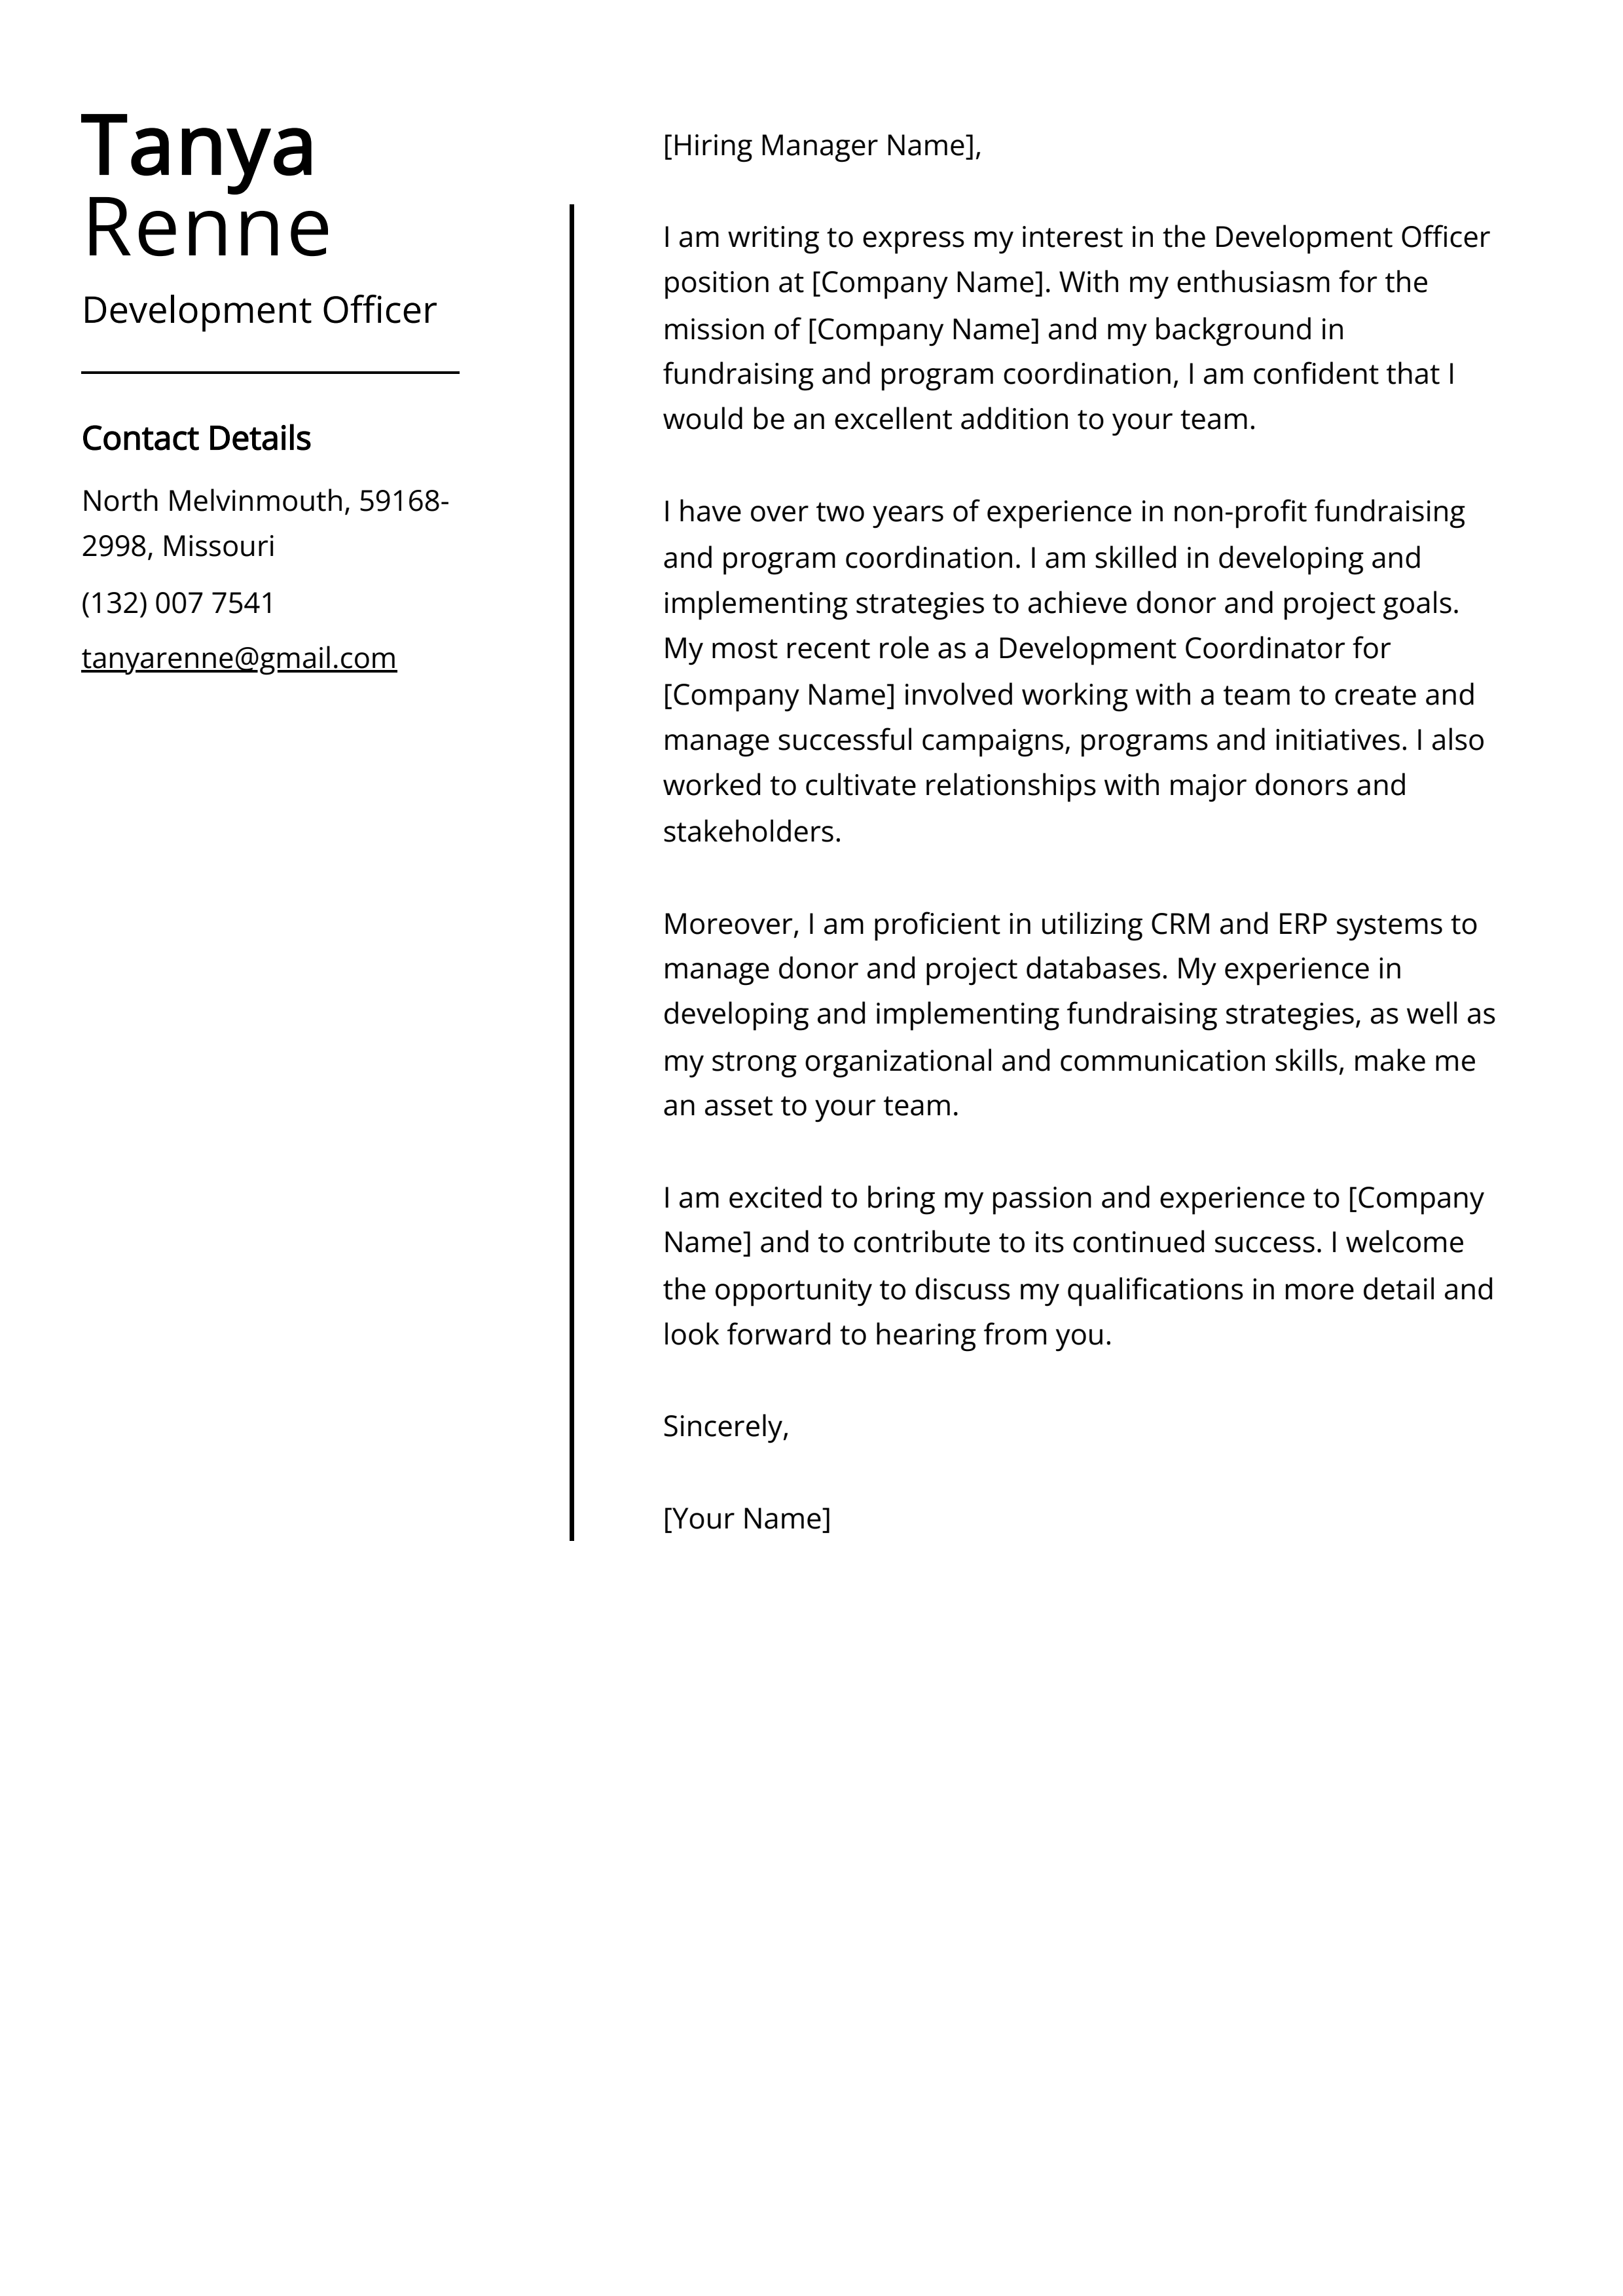 Development Officer Cover Letter Example